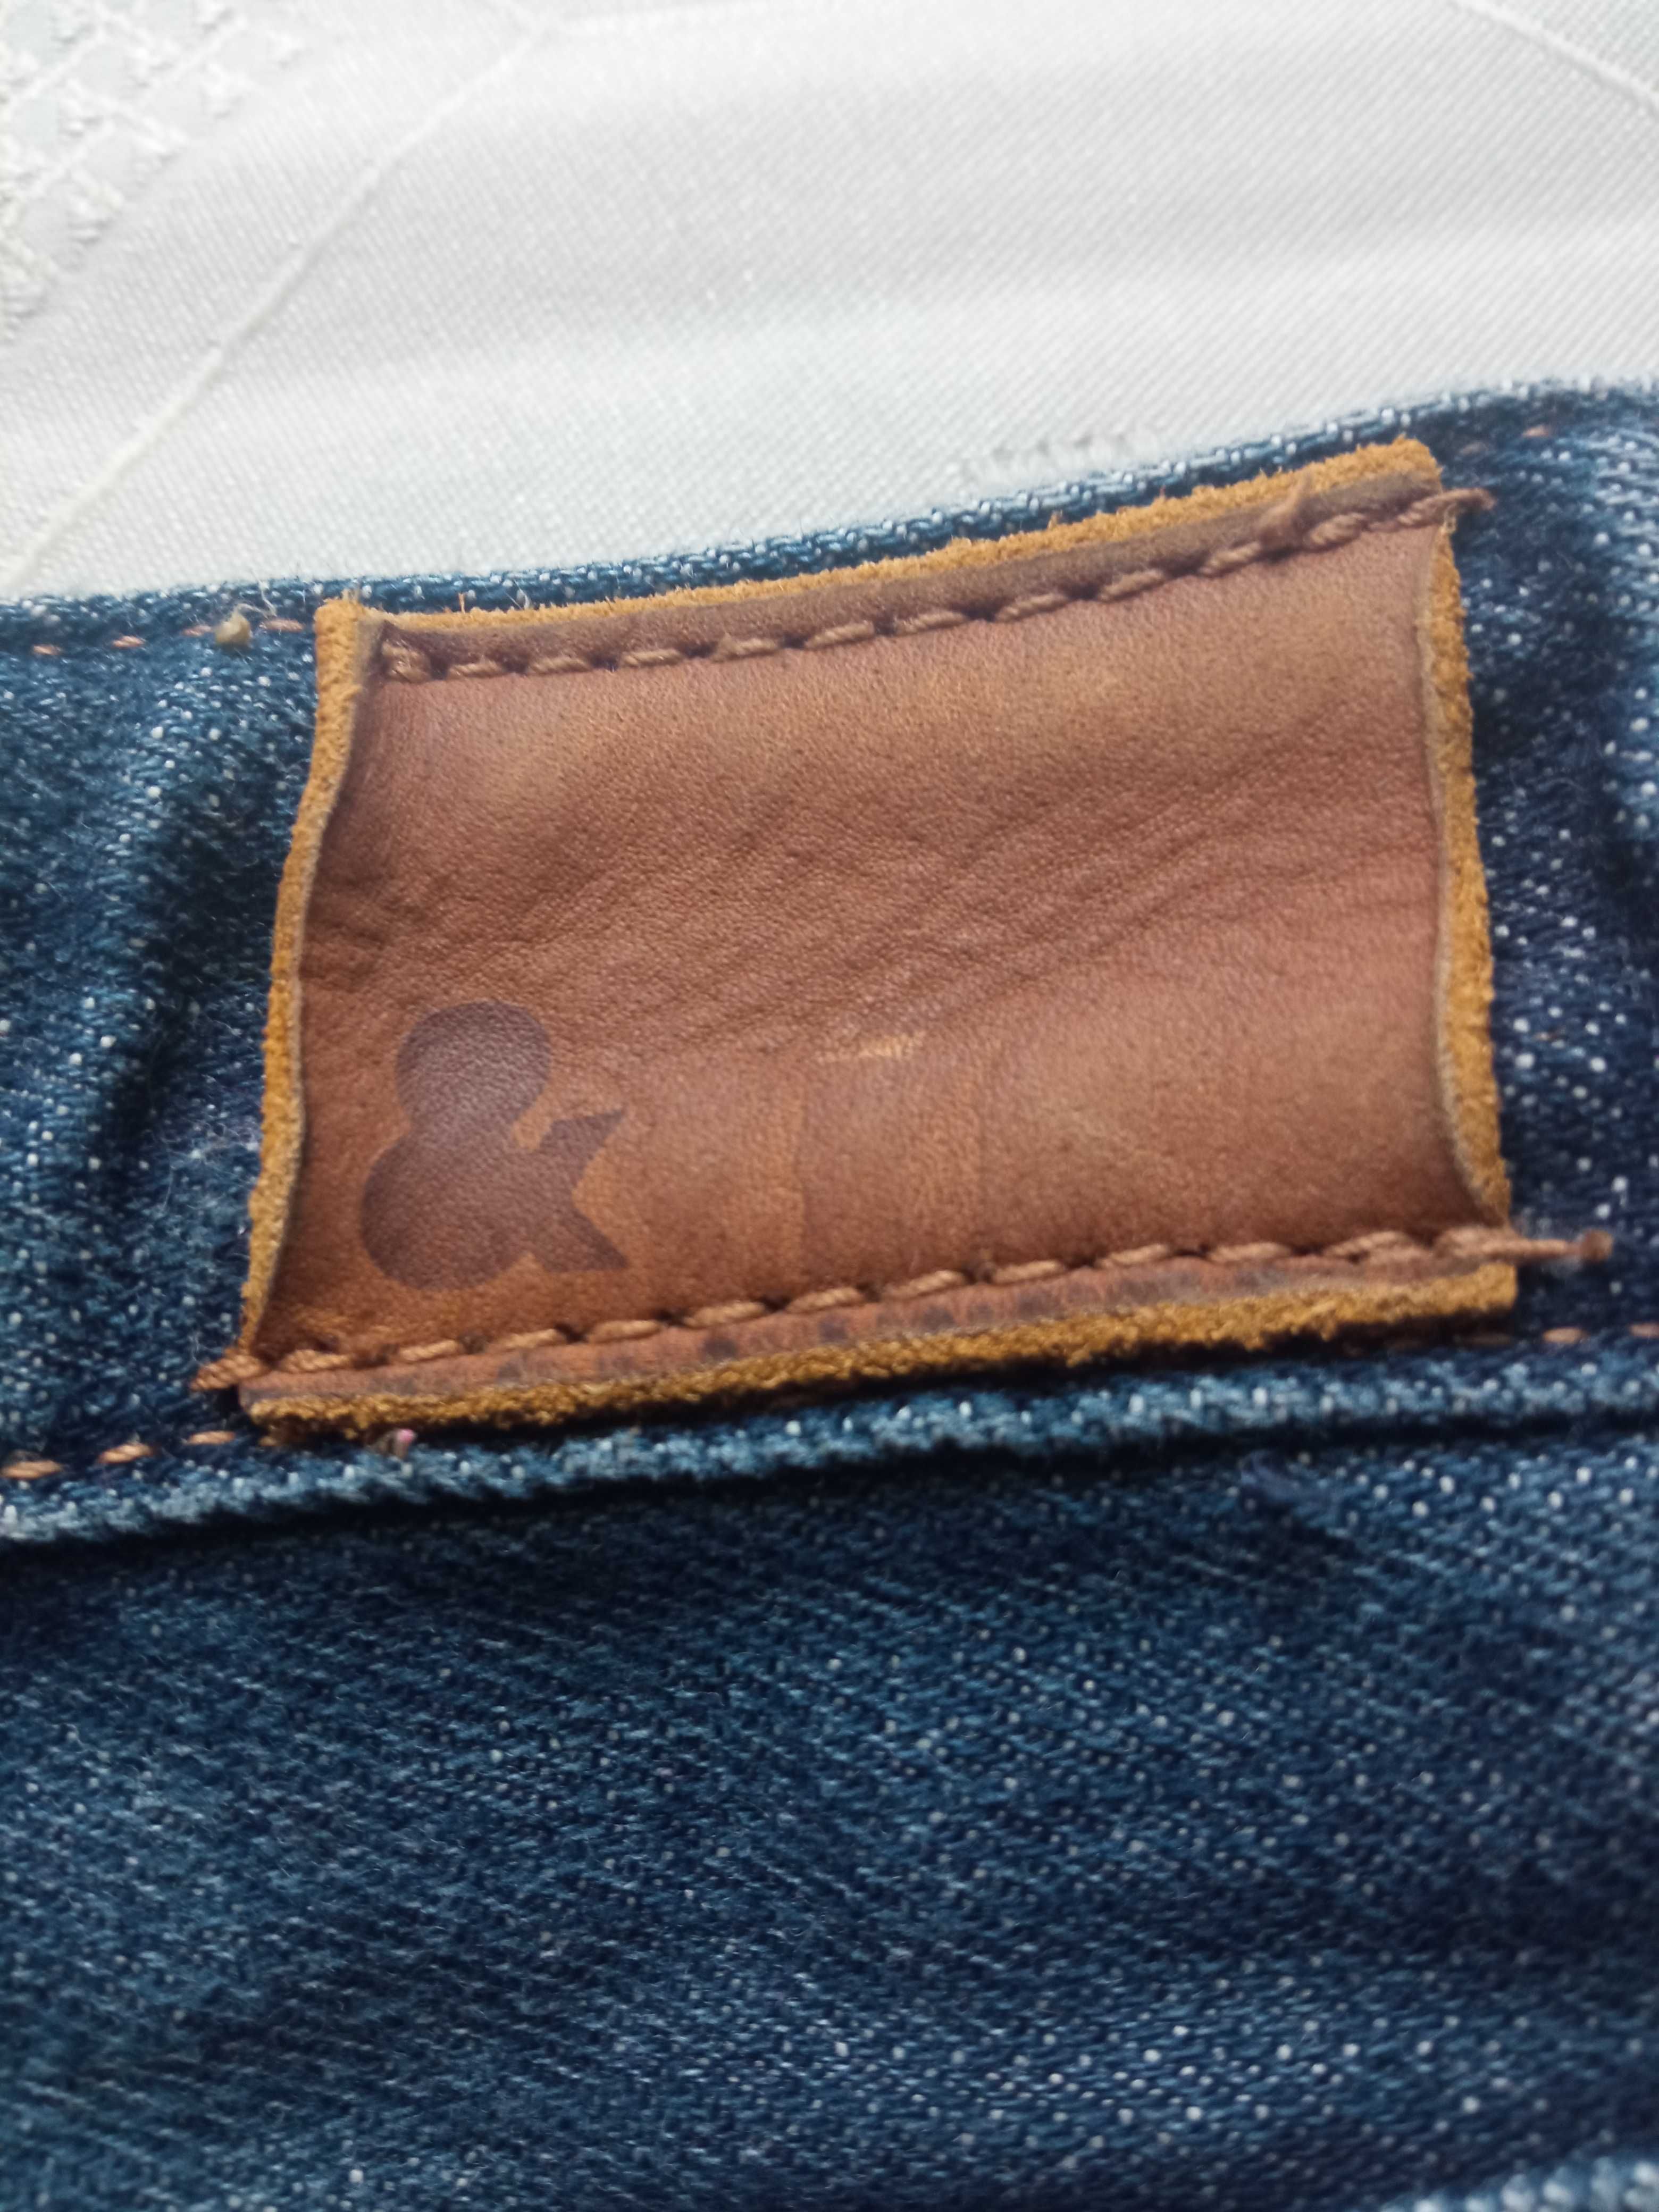 Denim by H&M dziewczęca spódniczka jeans r 104